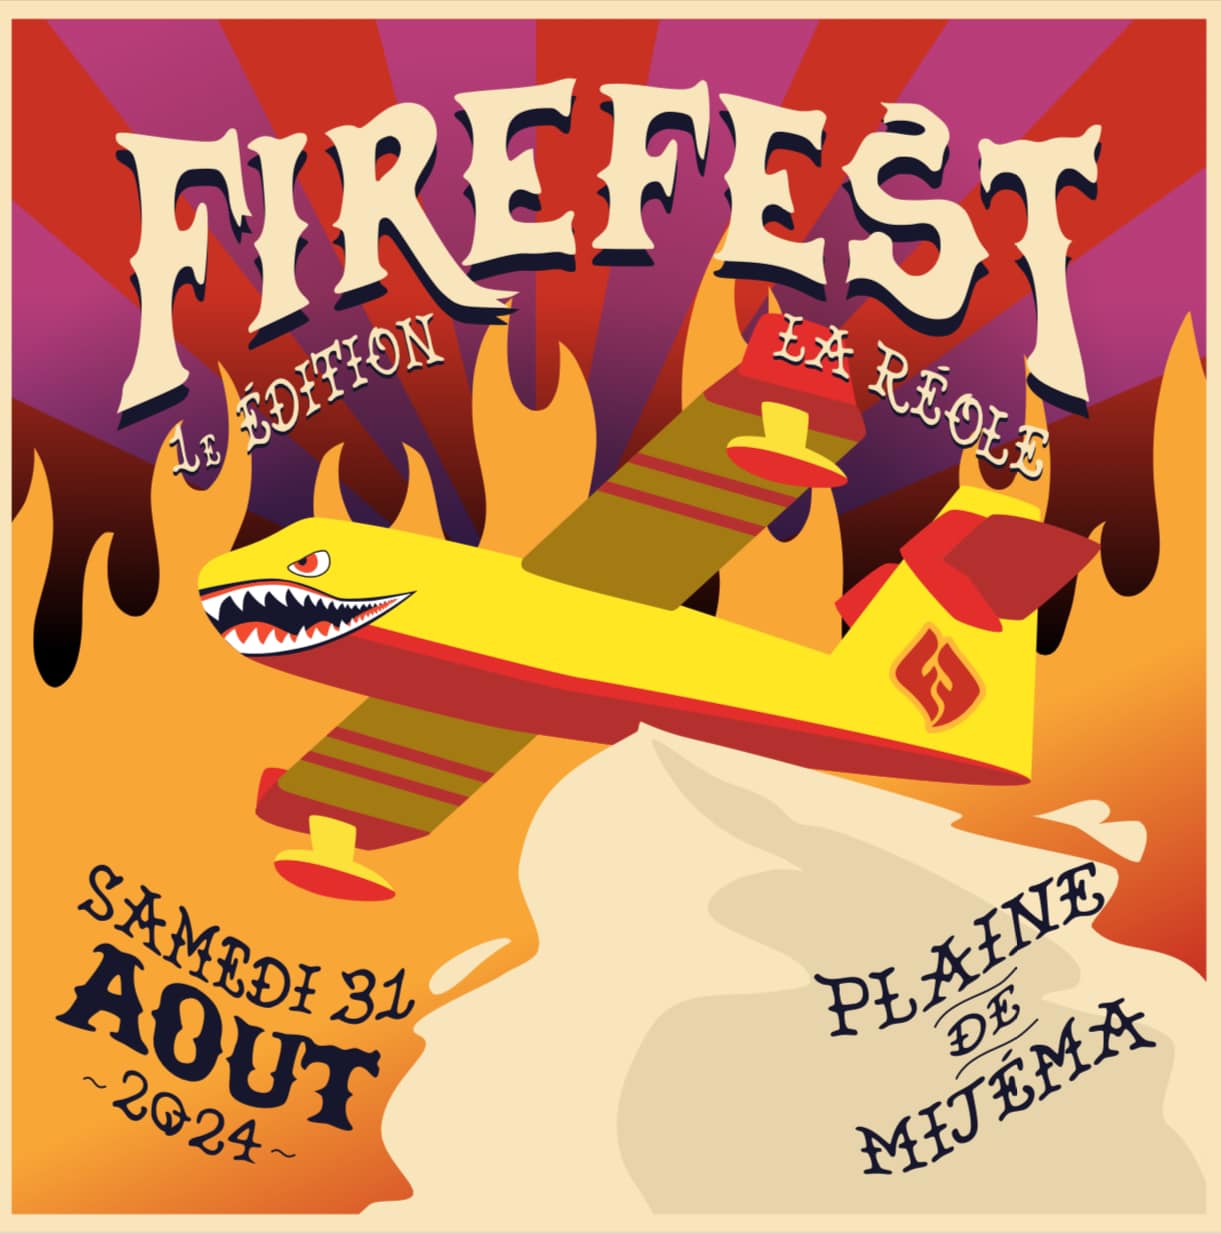 Festival Firefest